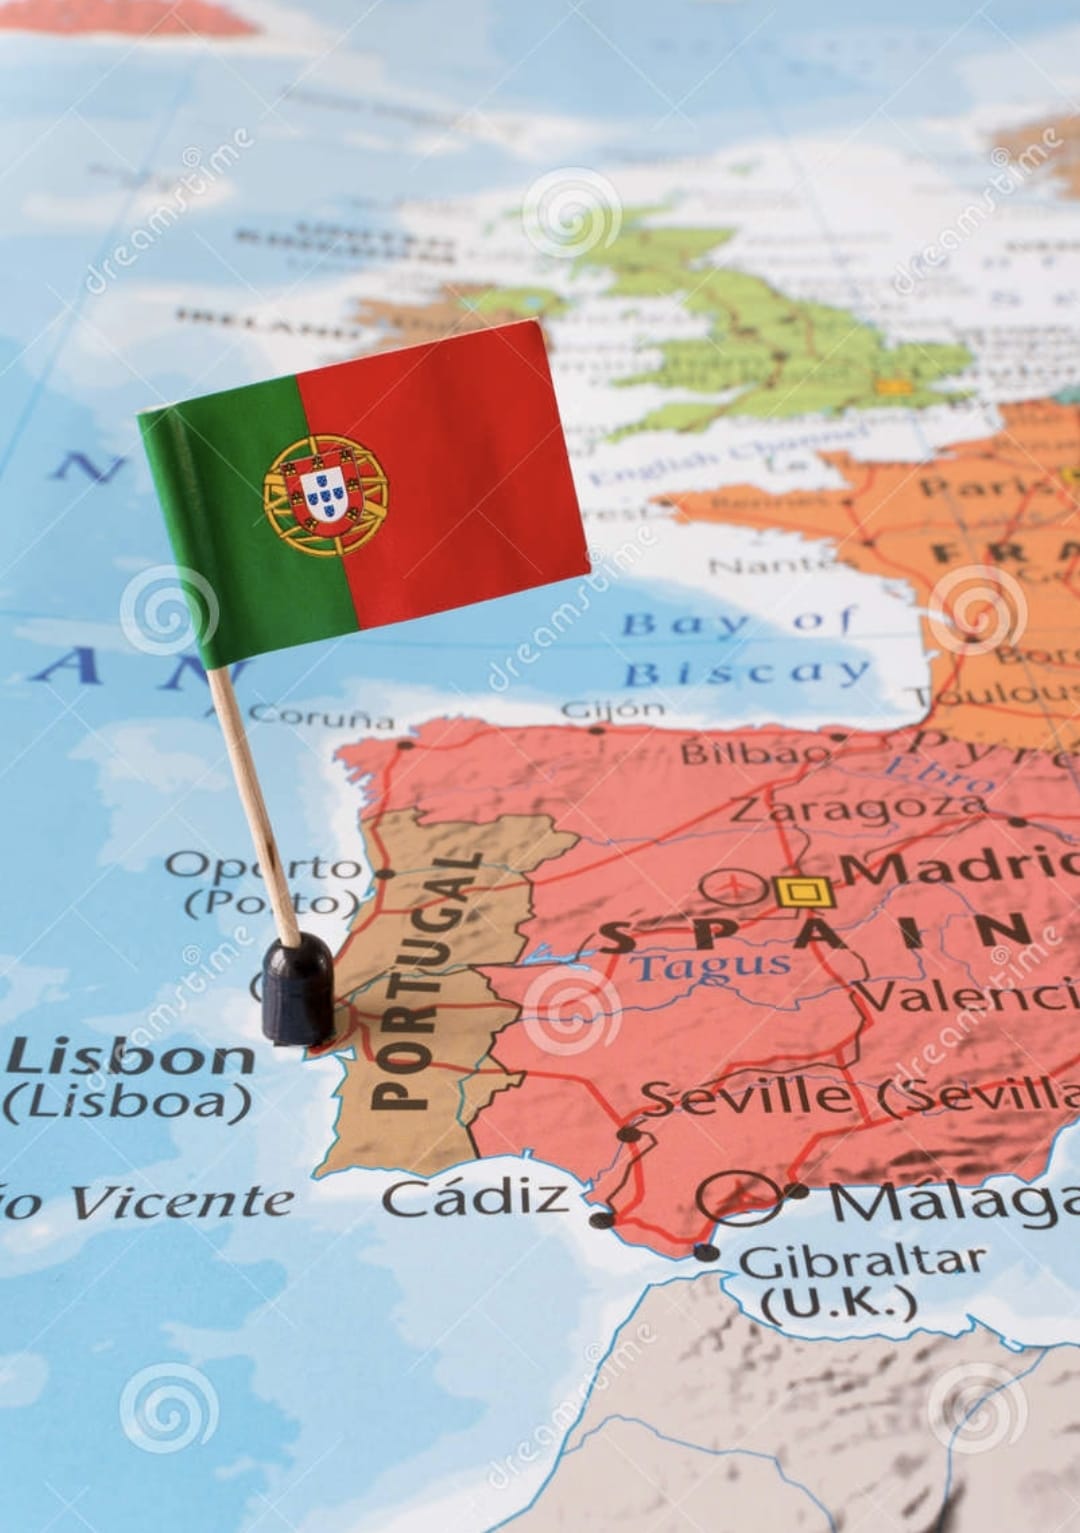 португалия на карте мира